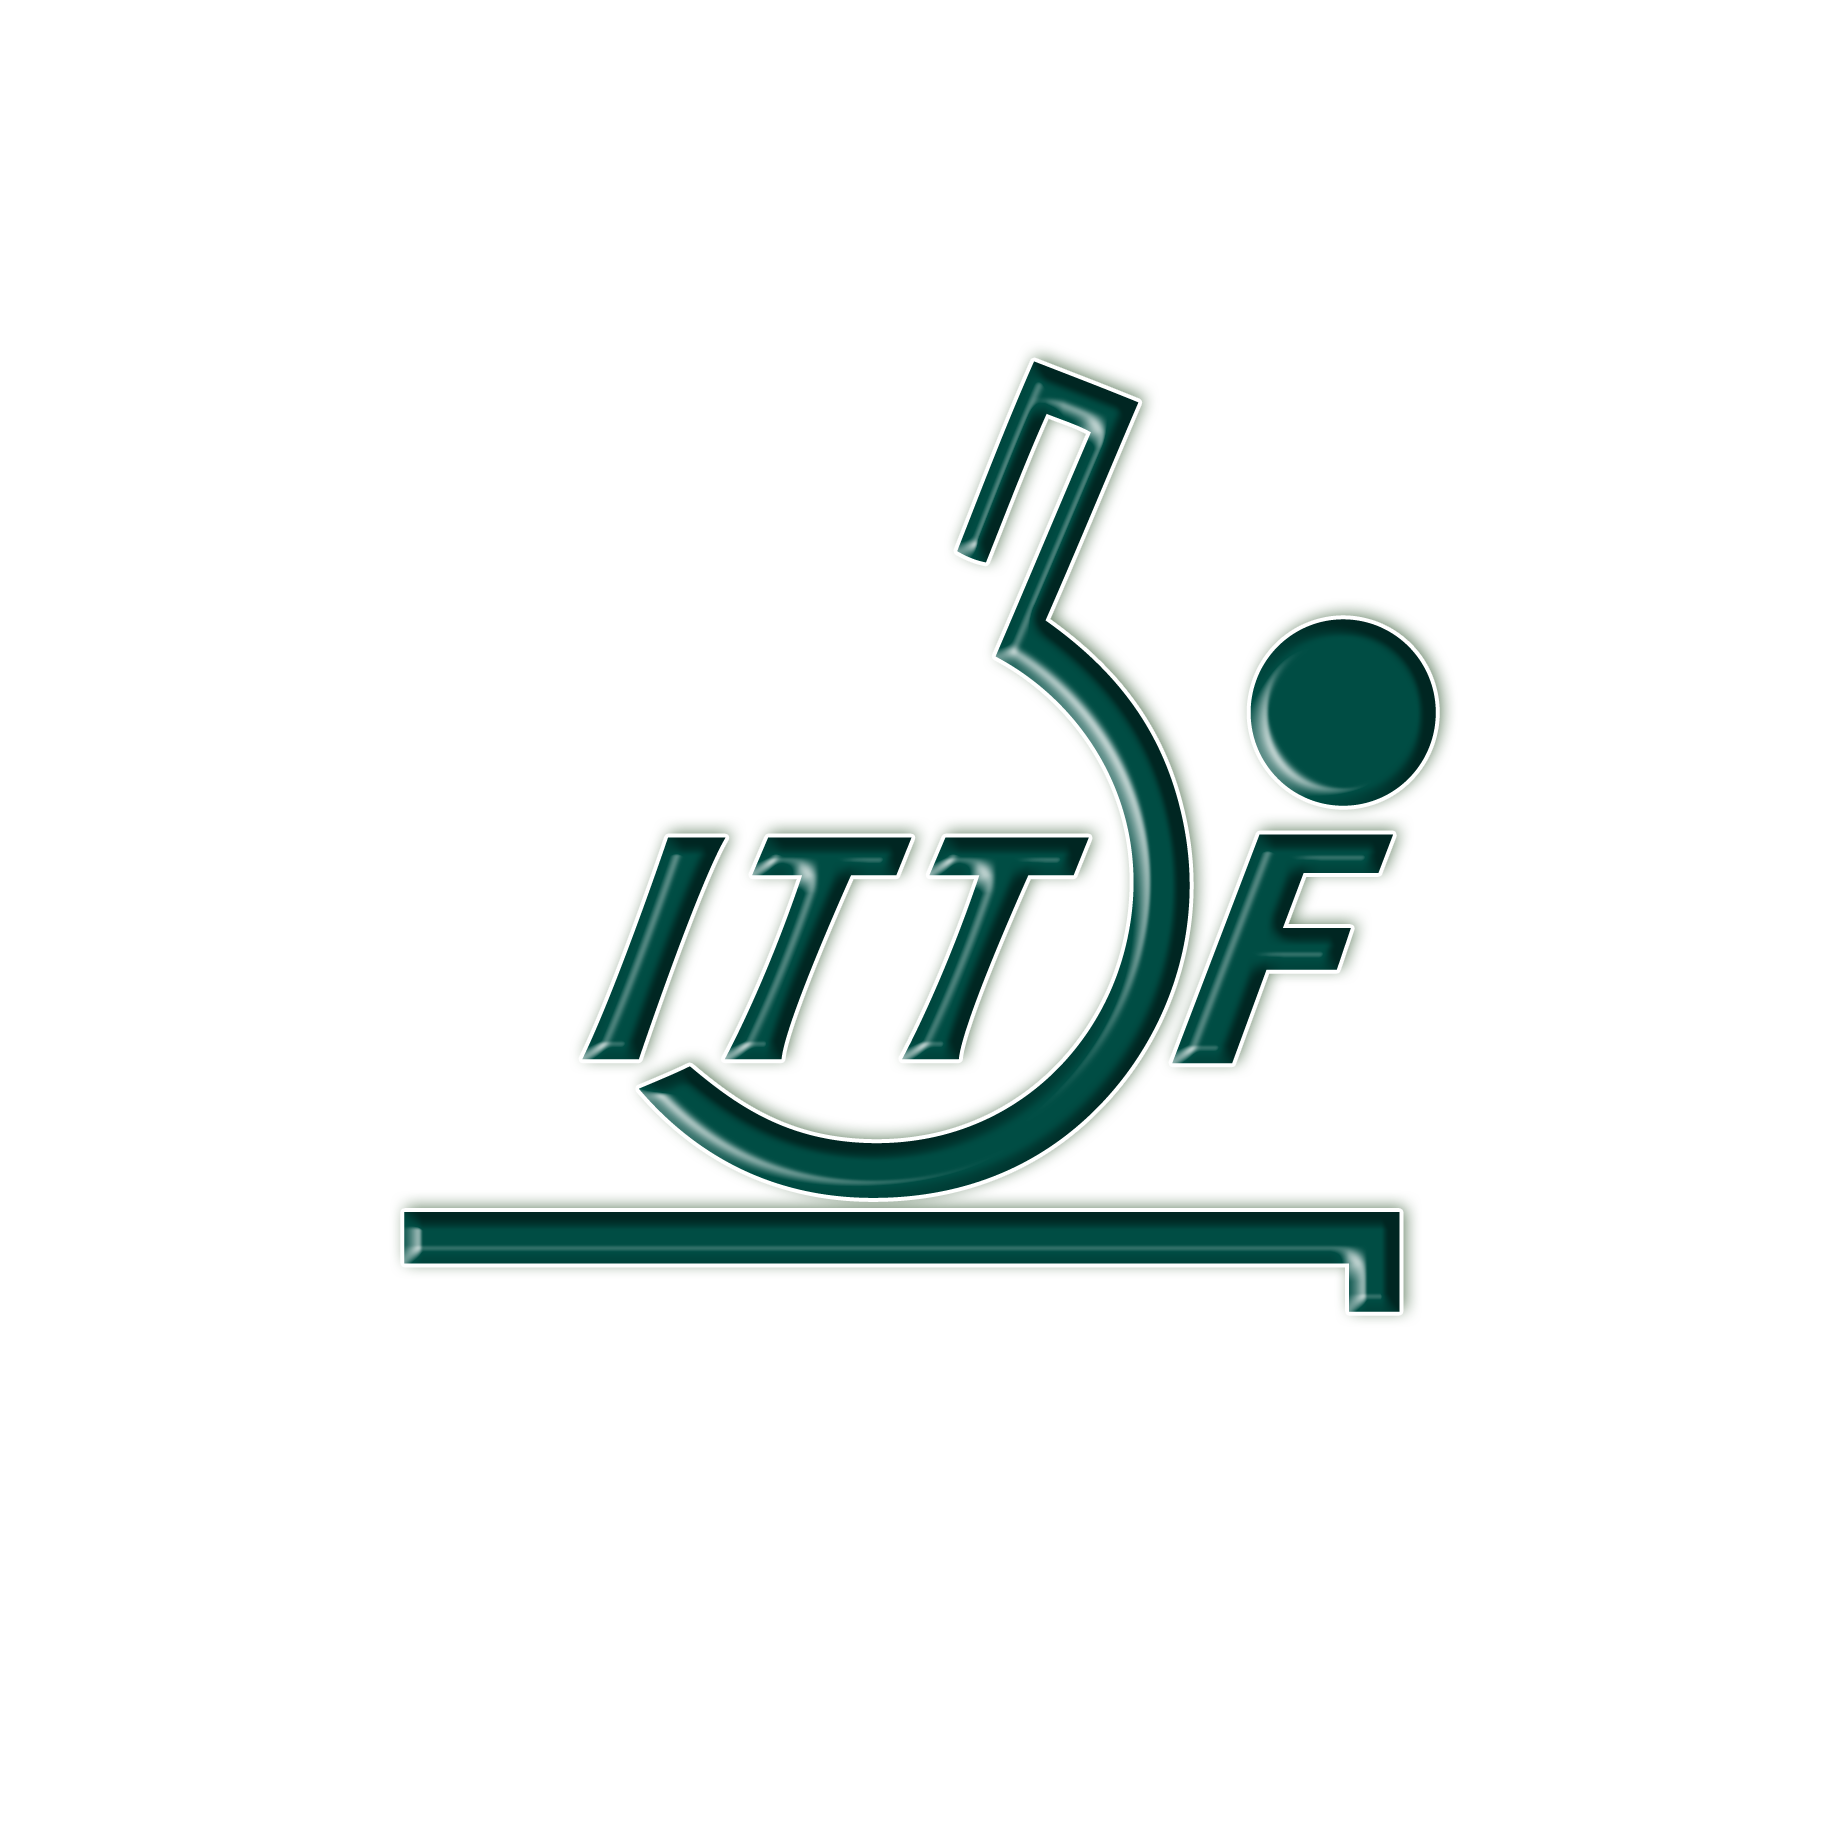 Ittf German Open 2022